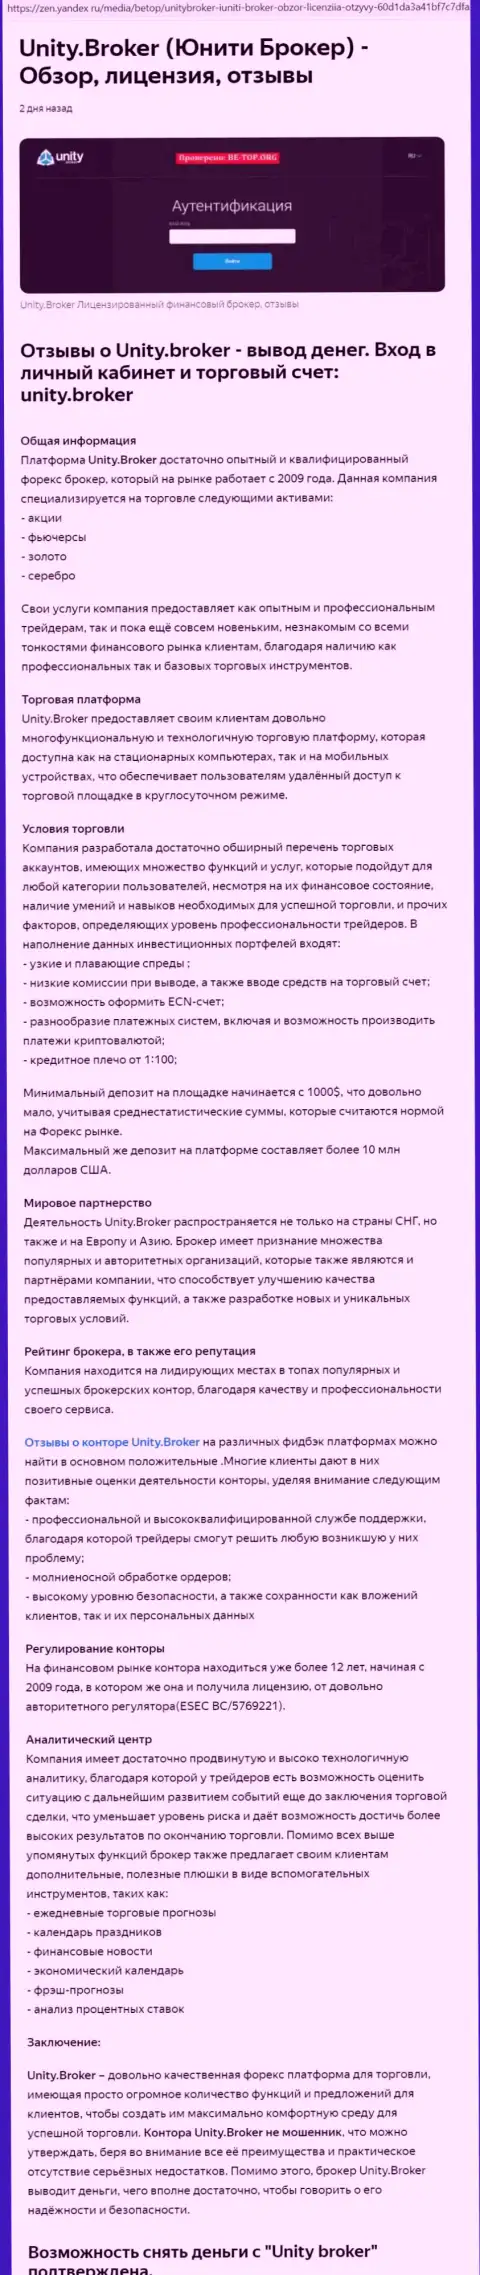 Обзор FOREX дилинговой компании Юнити Брокер на web-портале Яндекс Дзен